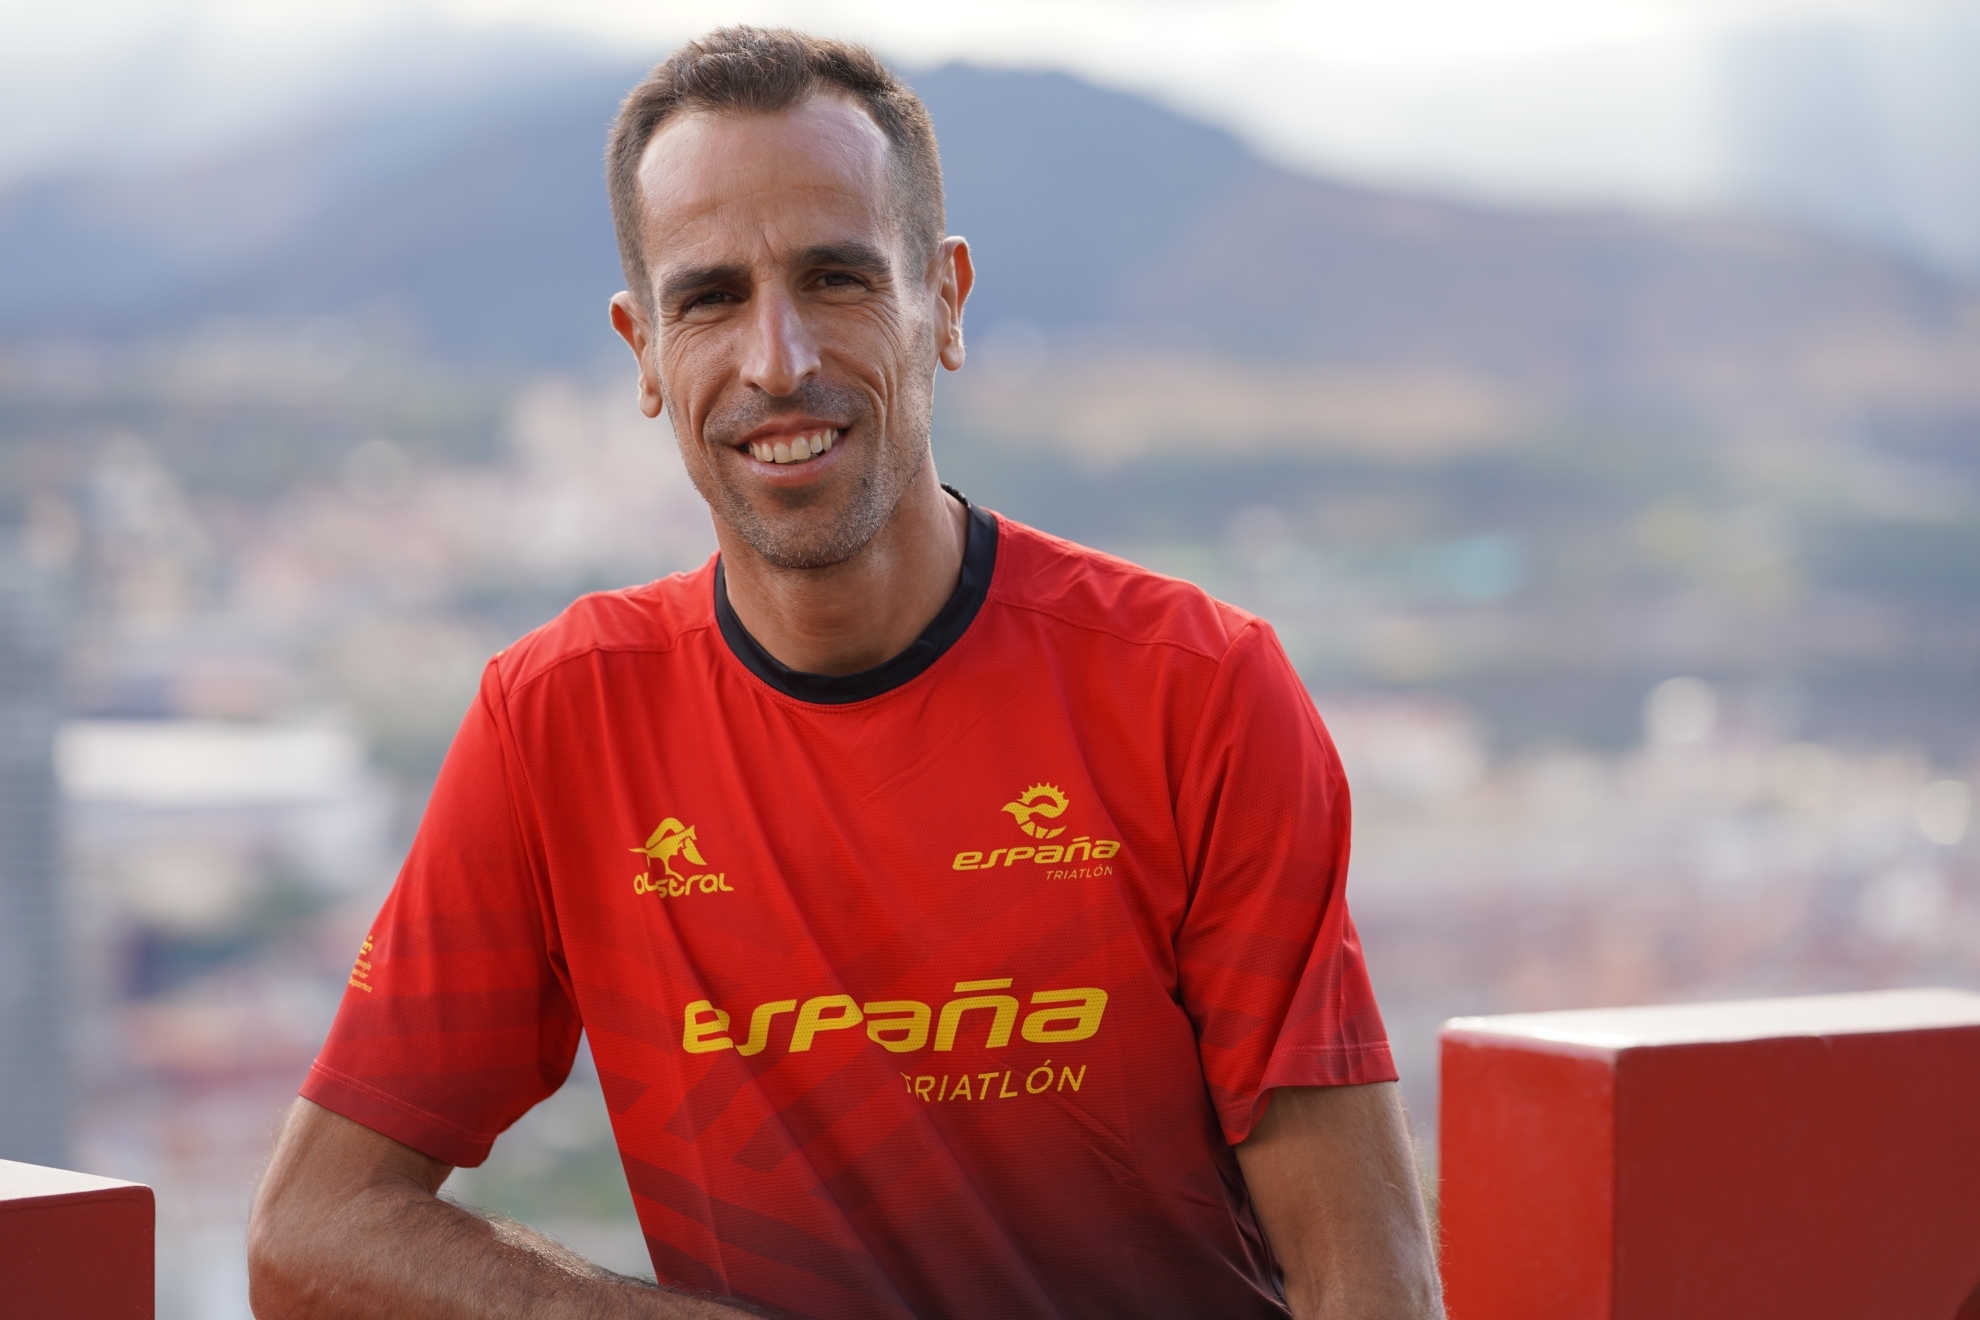 Emilio Martín, tricampeón mundial, ante su adiós en Bilbao: "Sería increíble lograr una medalla"